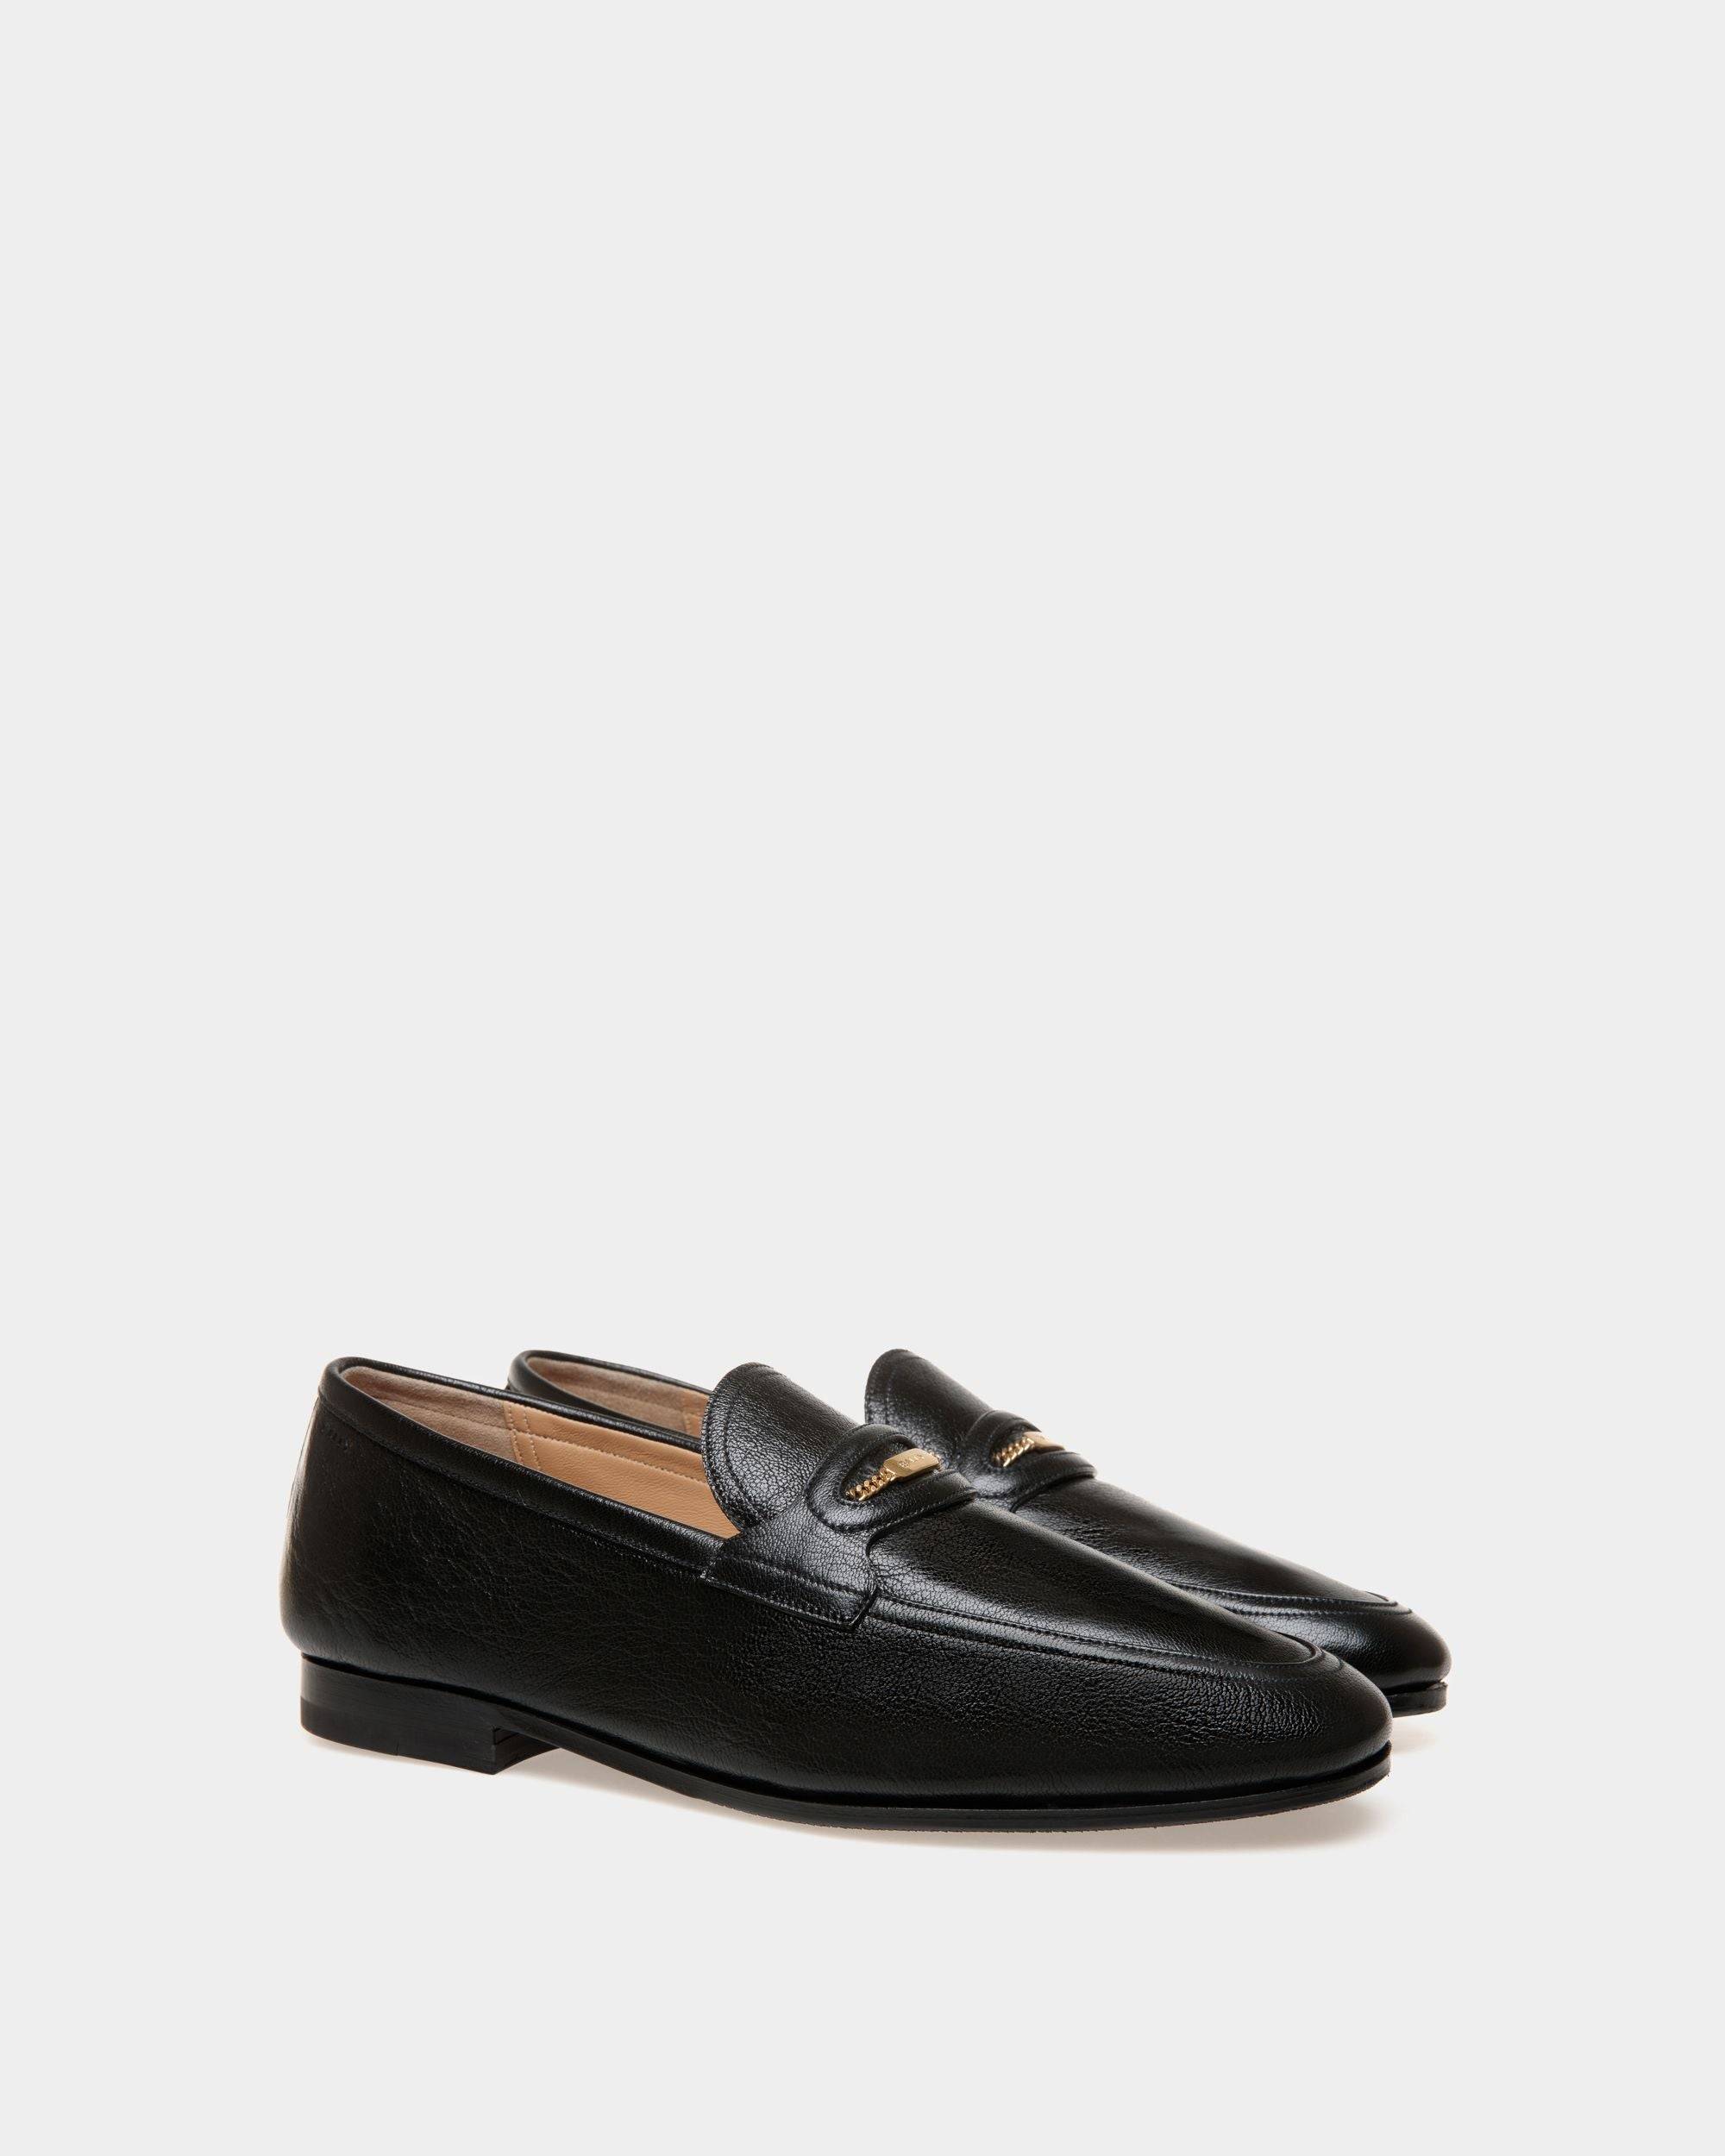 Plume | Loafers für Herren aus genarbtem Leder in Schwarz | Bally | Still Life 3/4 Vorderseite